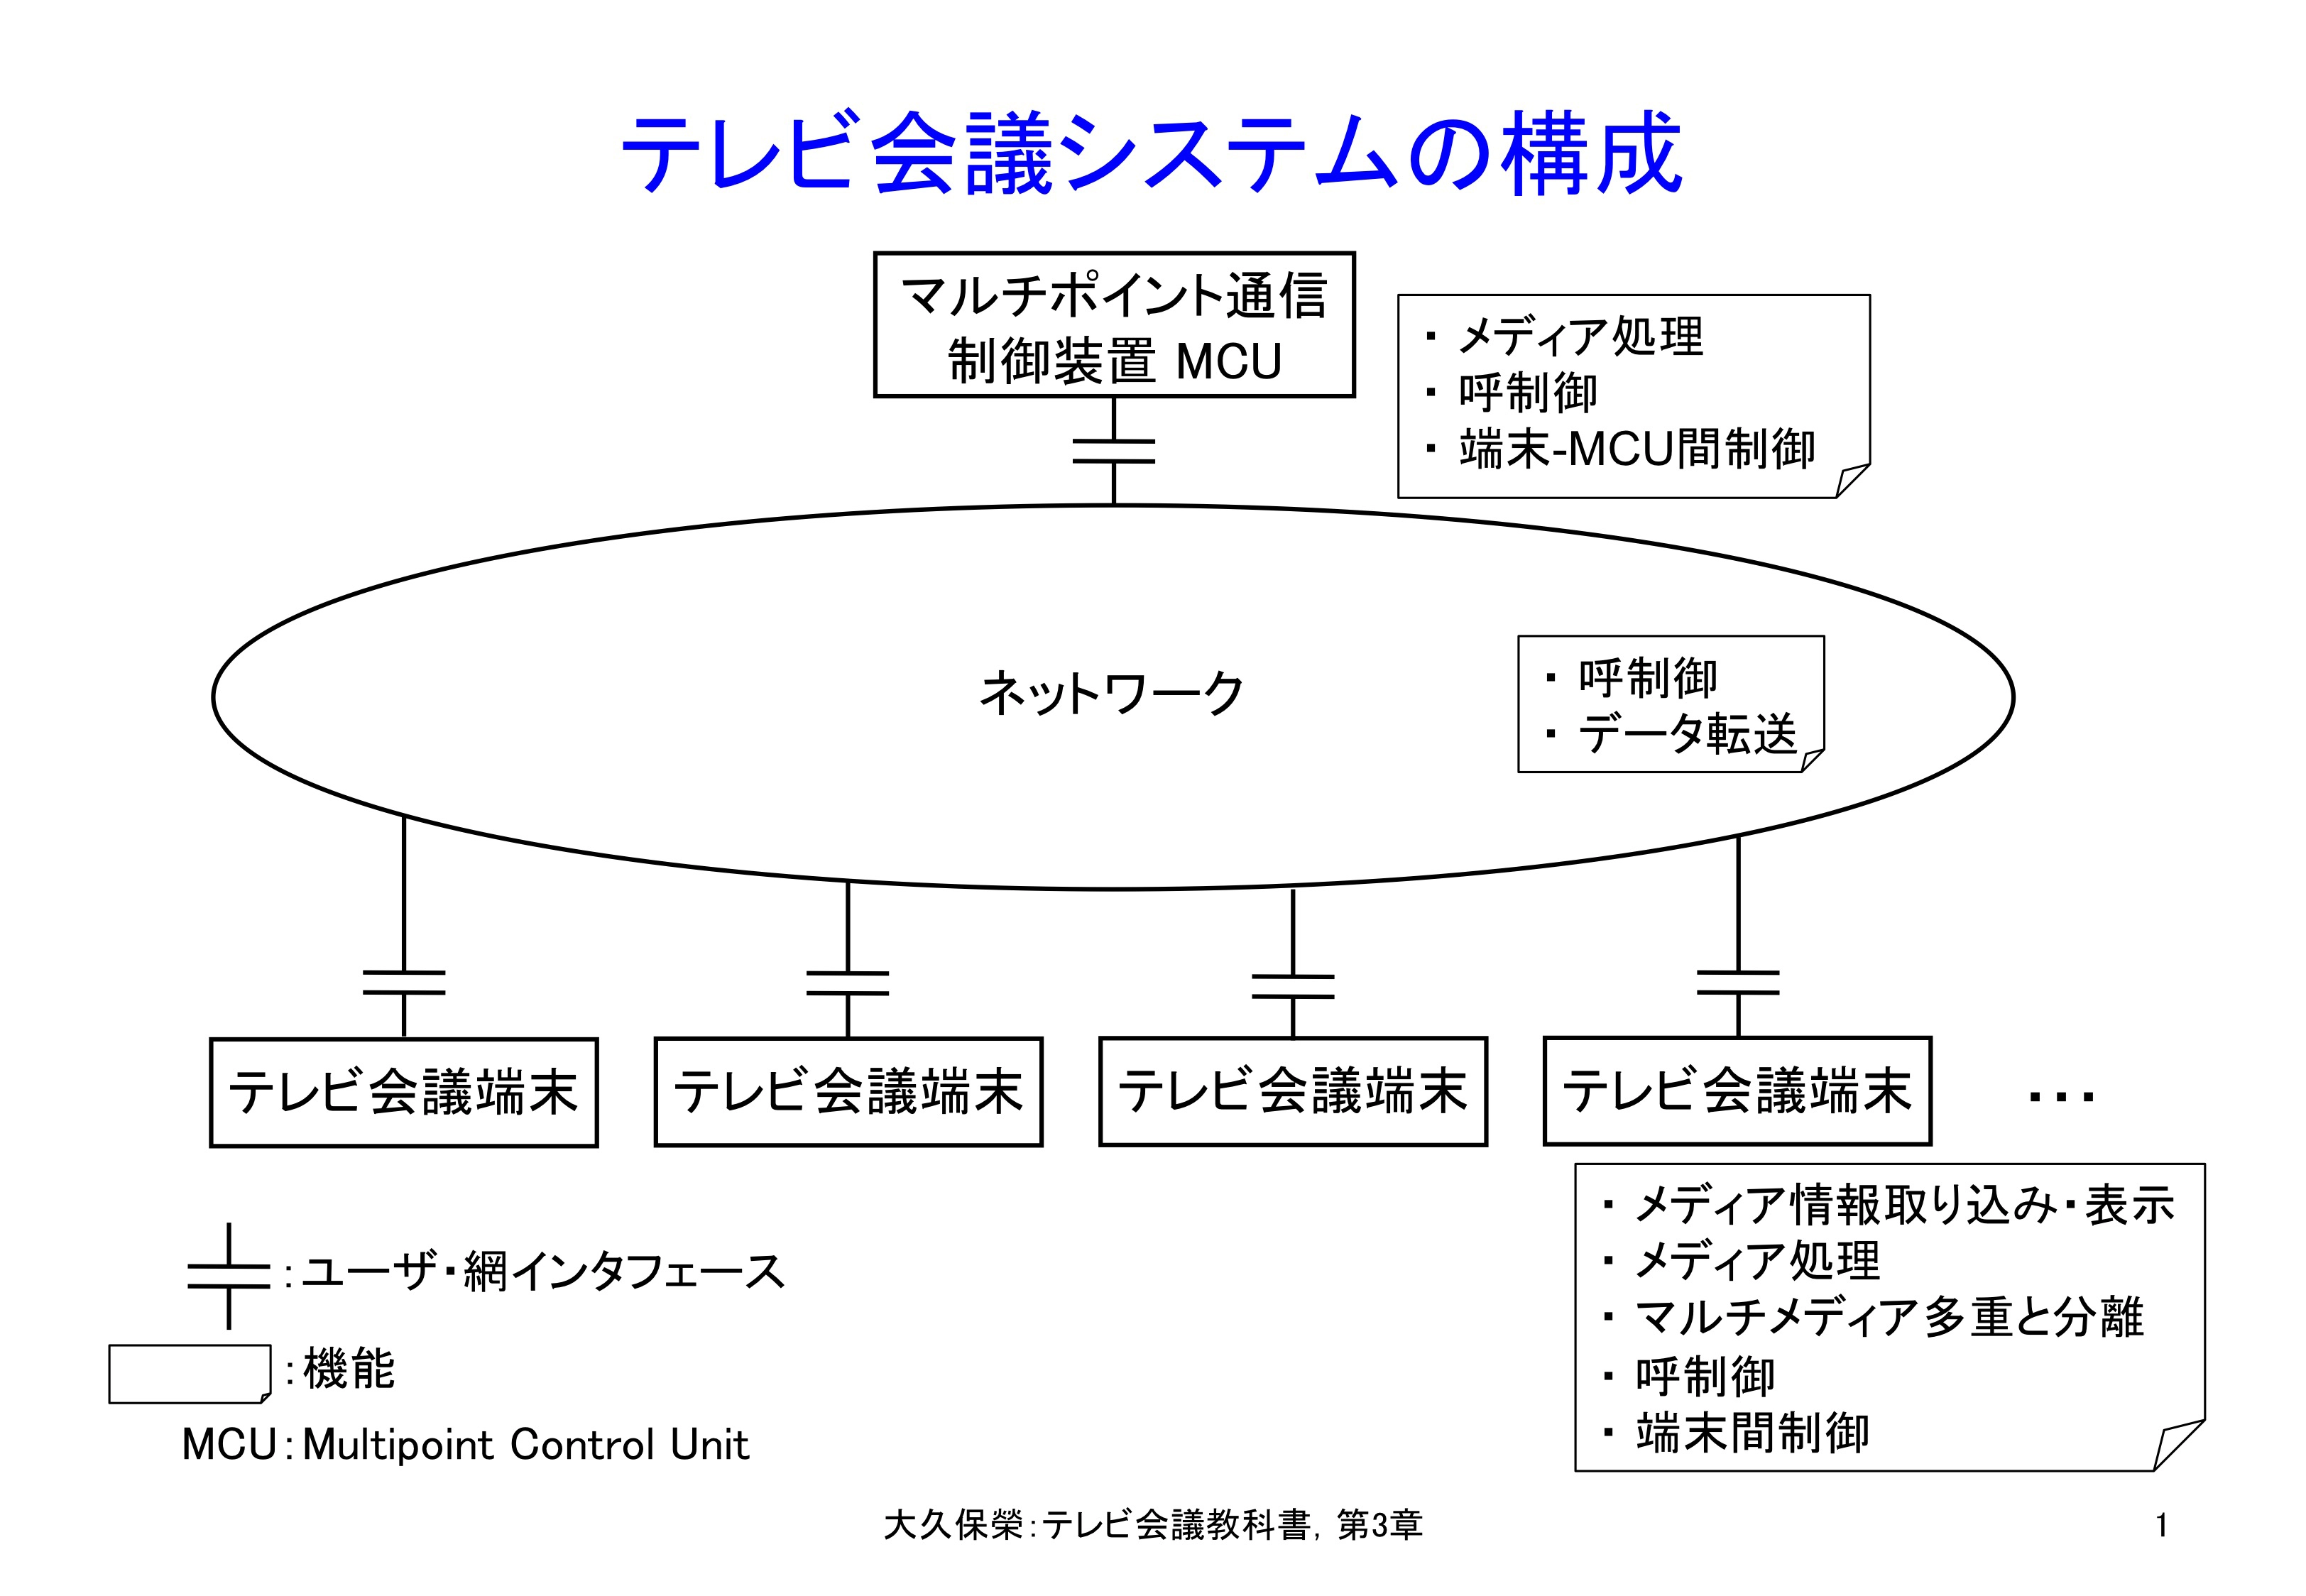 図3-1 テレビ会議システムの構成